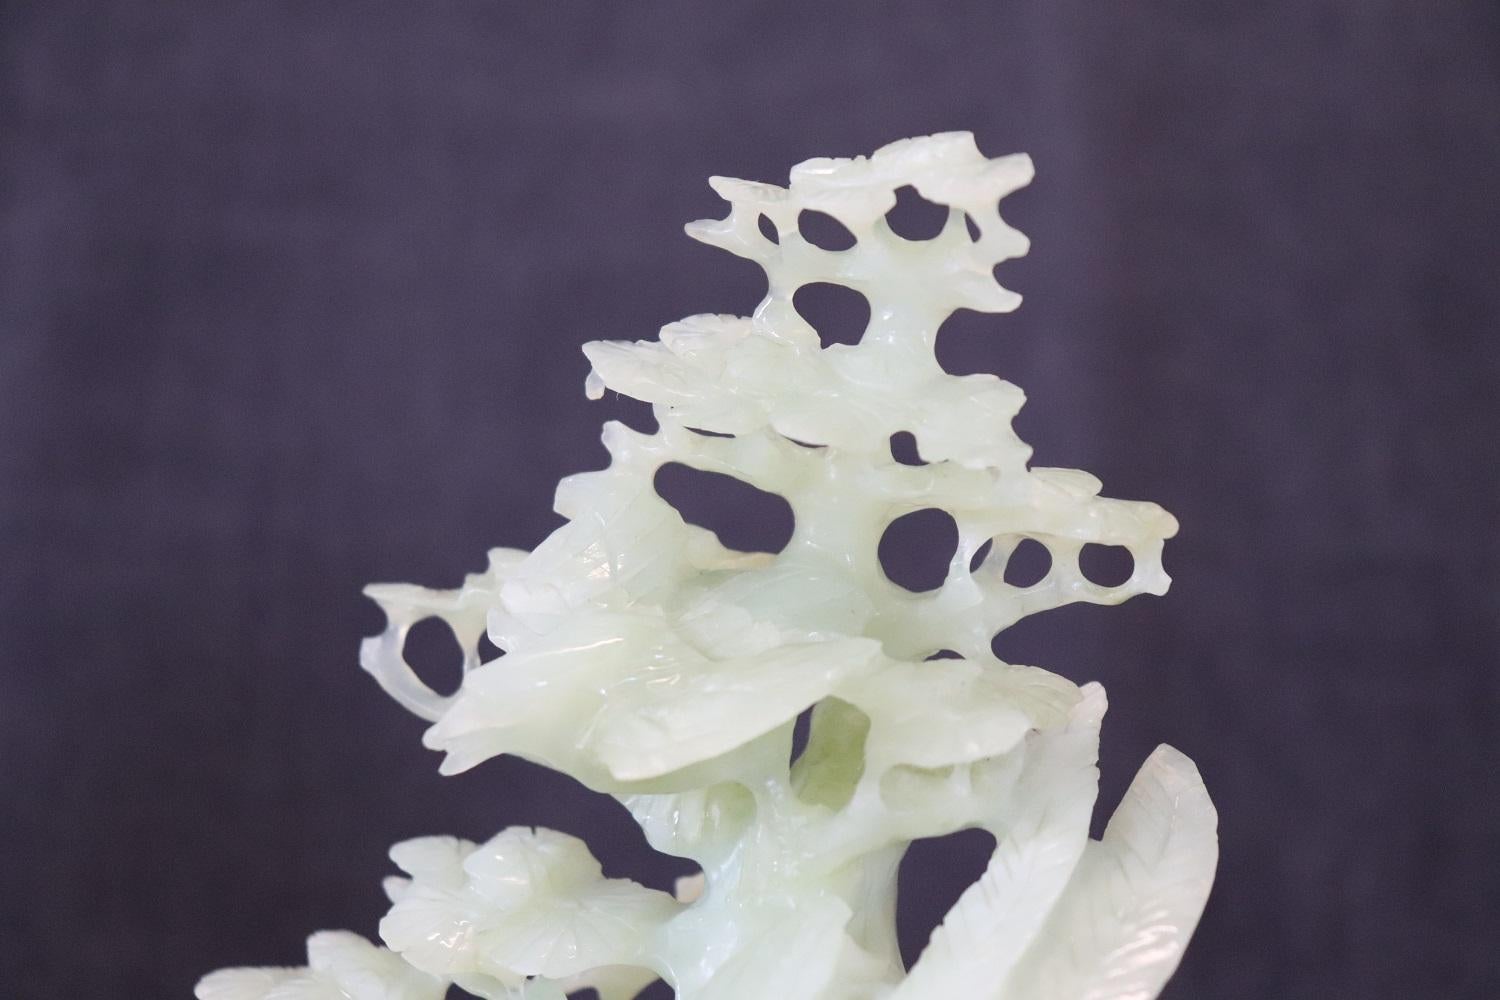 20. Jahrhundert Schöne Skulptur aus kostbarer grüner Jade, hergestellt in China. Hohe künstlerische Qualität eines Baumes mit vielen Blättern, zwischen dessen Ästen einige Vögel zu sehen sind. Die Skulptur ruht auf einem Holzsockel. Perfekte